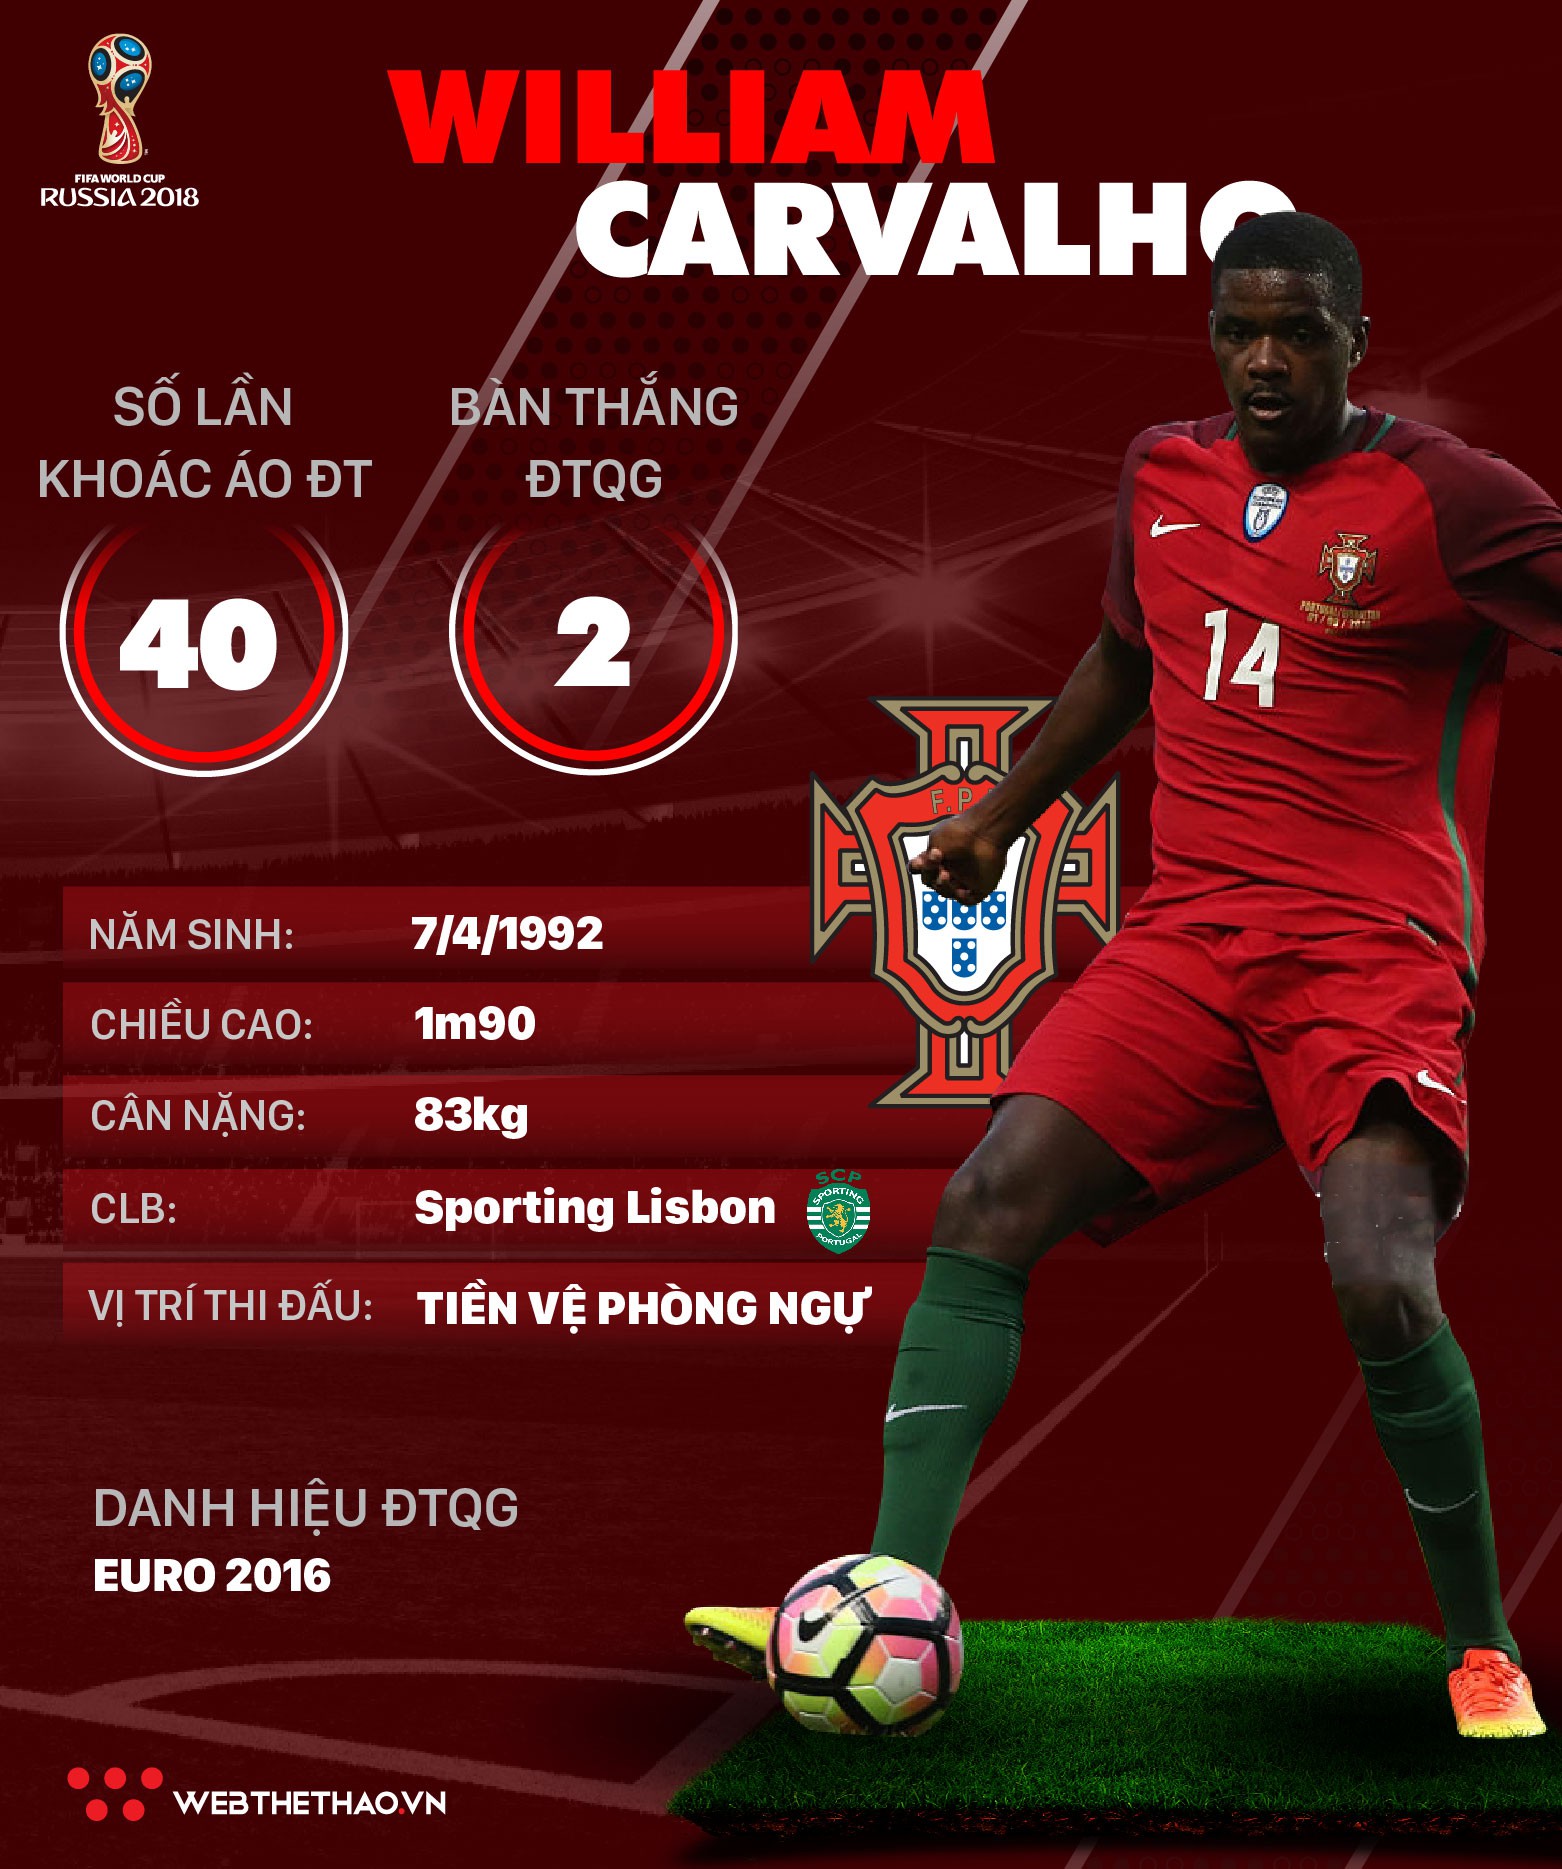 Thông tin cầu thủ William Carvalho của ĐT Bồ Đào Nha dự World Cup 2018 - Ảnh 1.